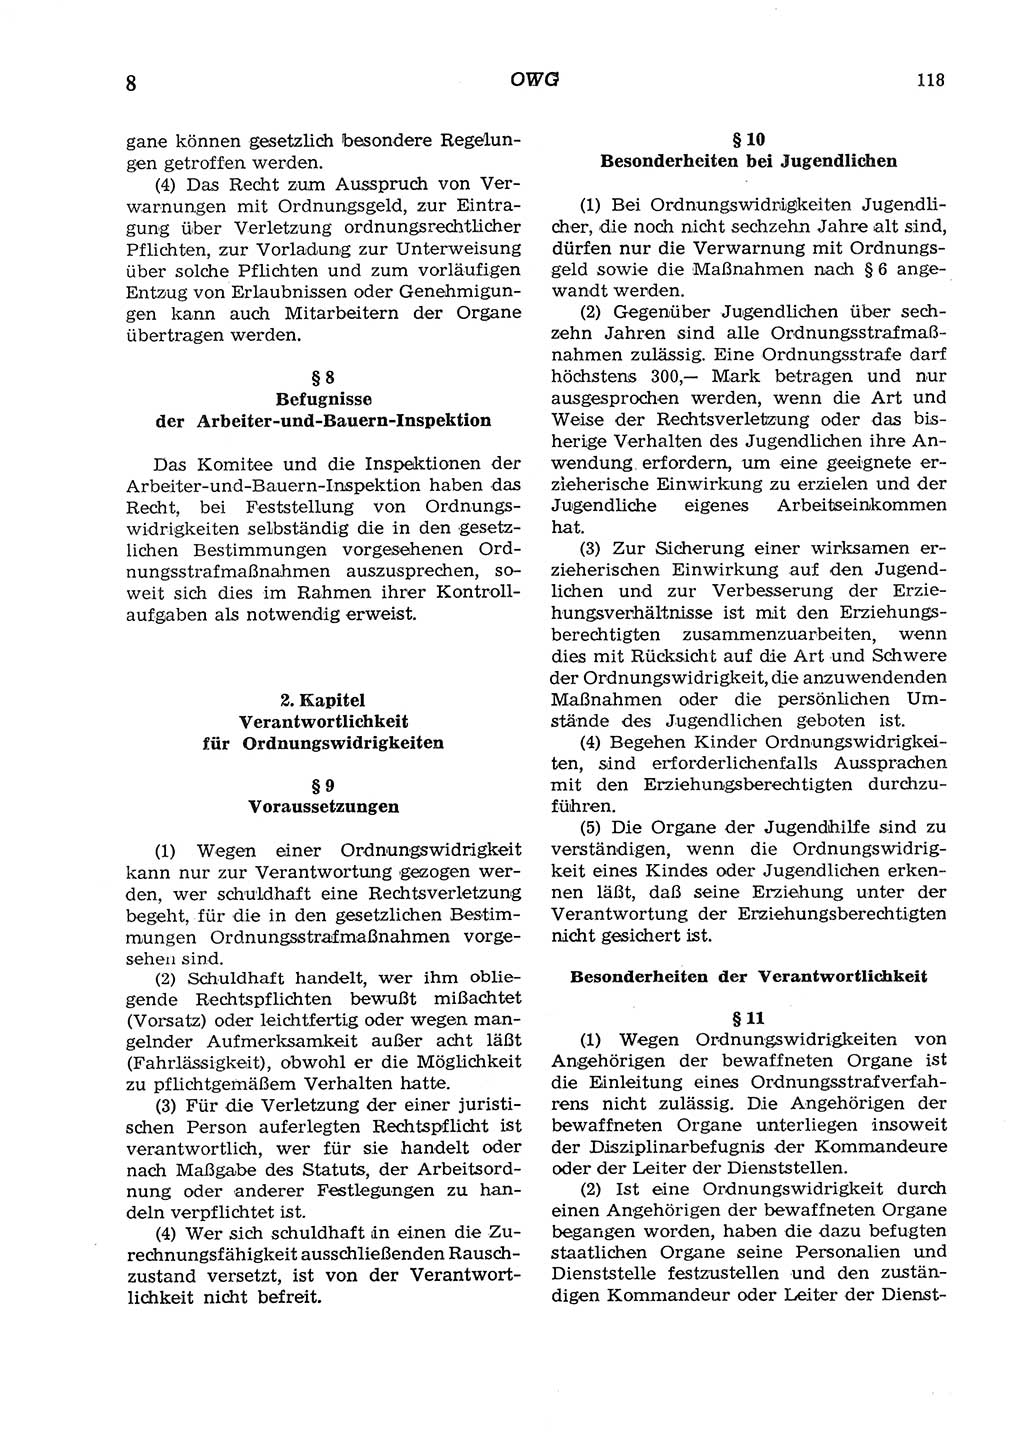 Strafgesetzbuch (StGB) der Deutschen Demokratischen Republik (DDR) und angrenzende Gesetze und Bestimmungen 1975, Seite 118 (StGB DDR Ges. Best. 1975, S. 118)